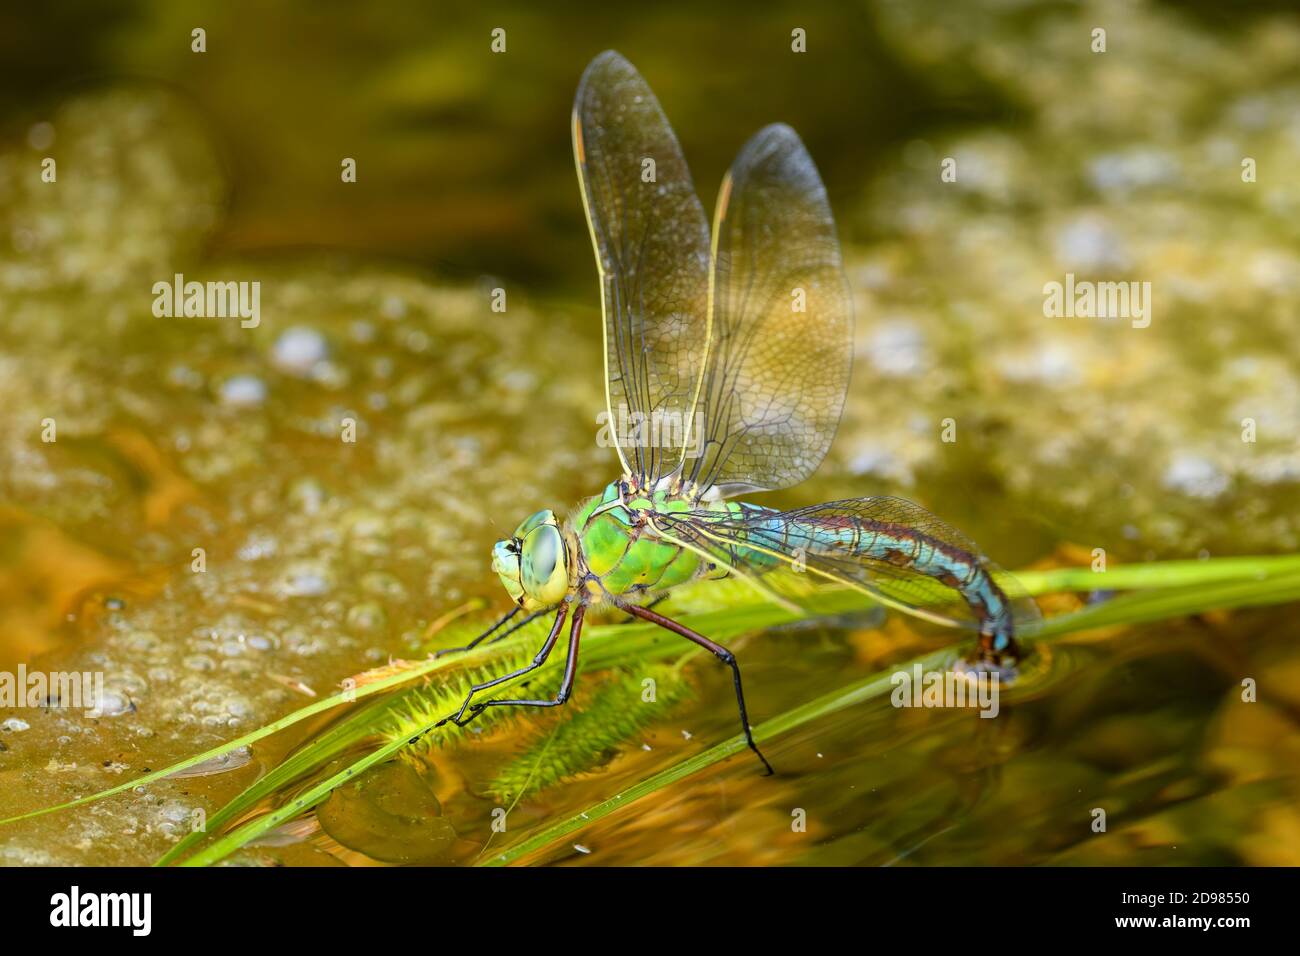 Empereur Dragonfly - Anax imperator, belle grande libellule bleue des eaux fraîches européennes, Stramberk, République Tchèque. Banque D'Images